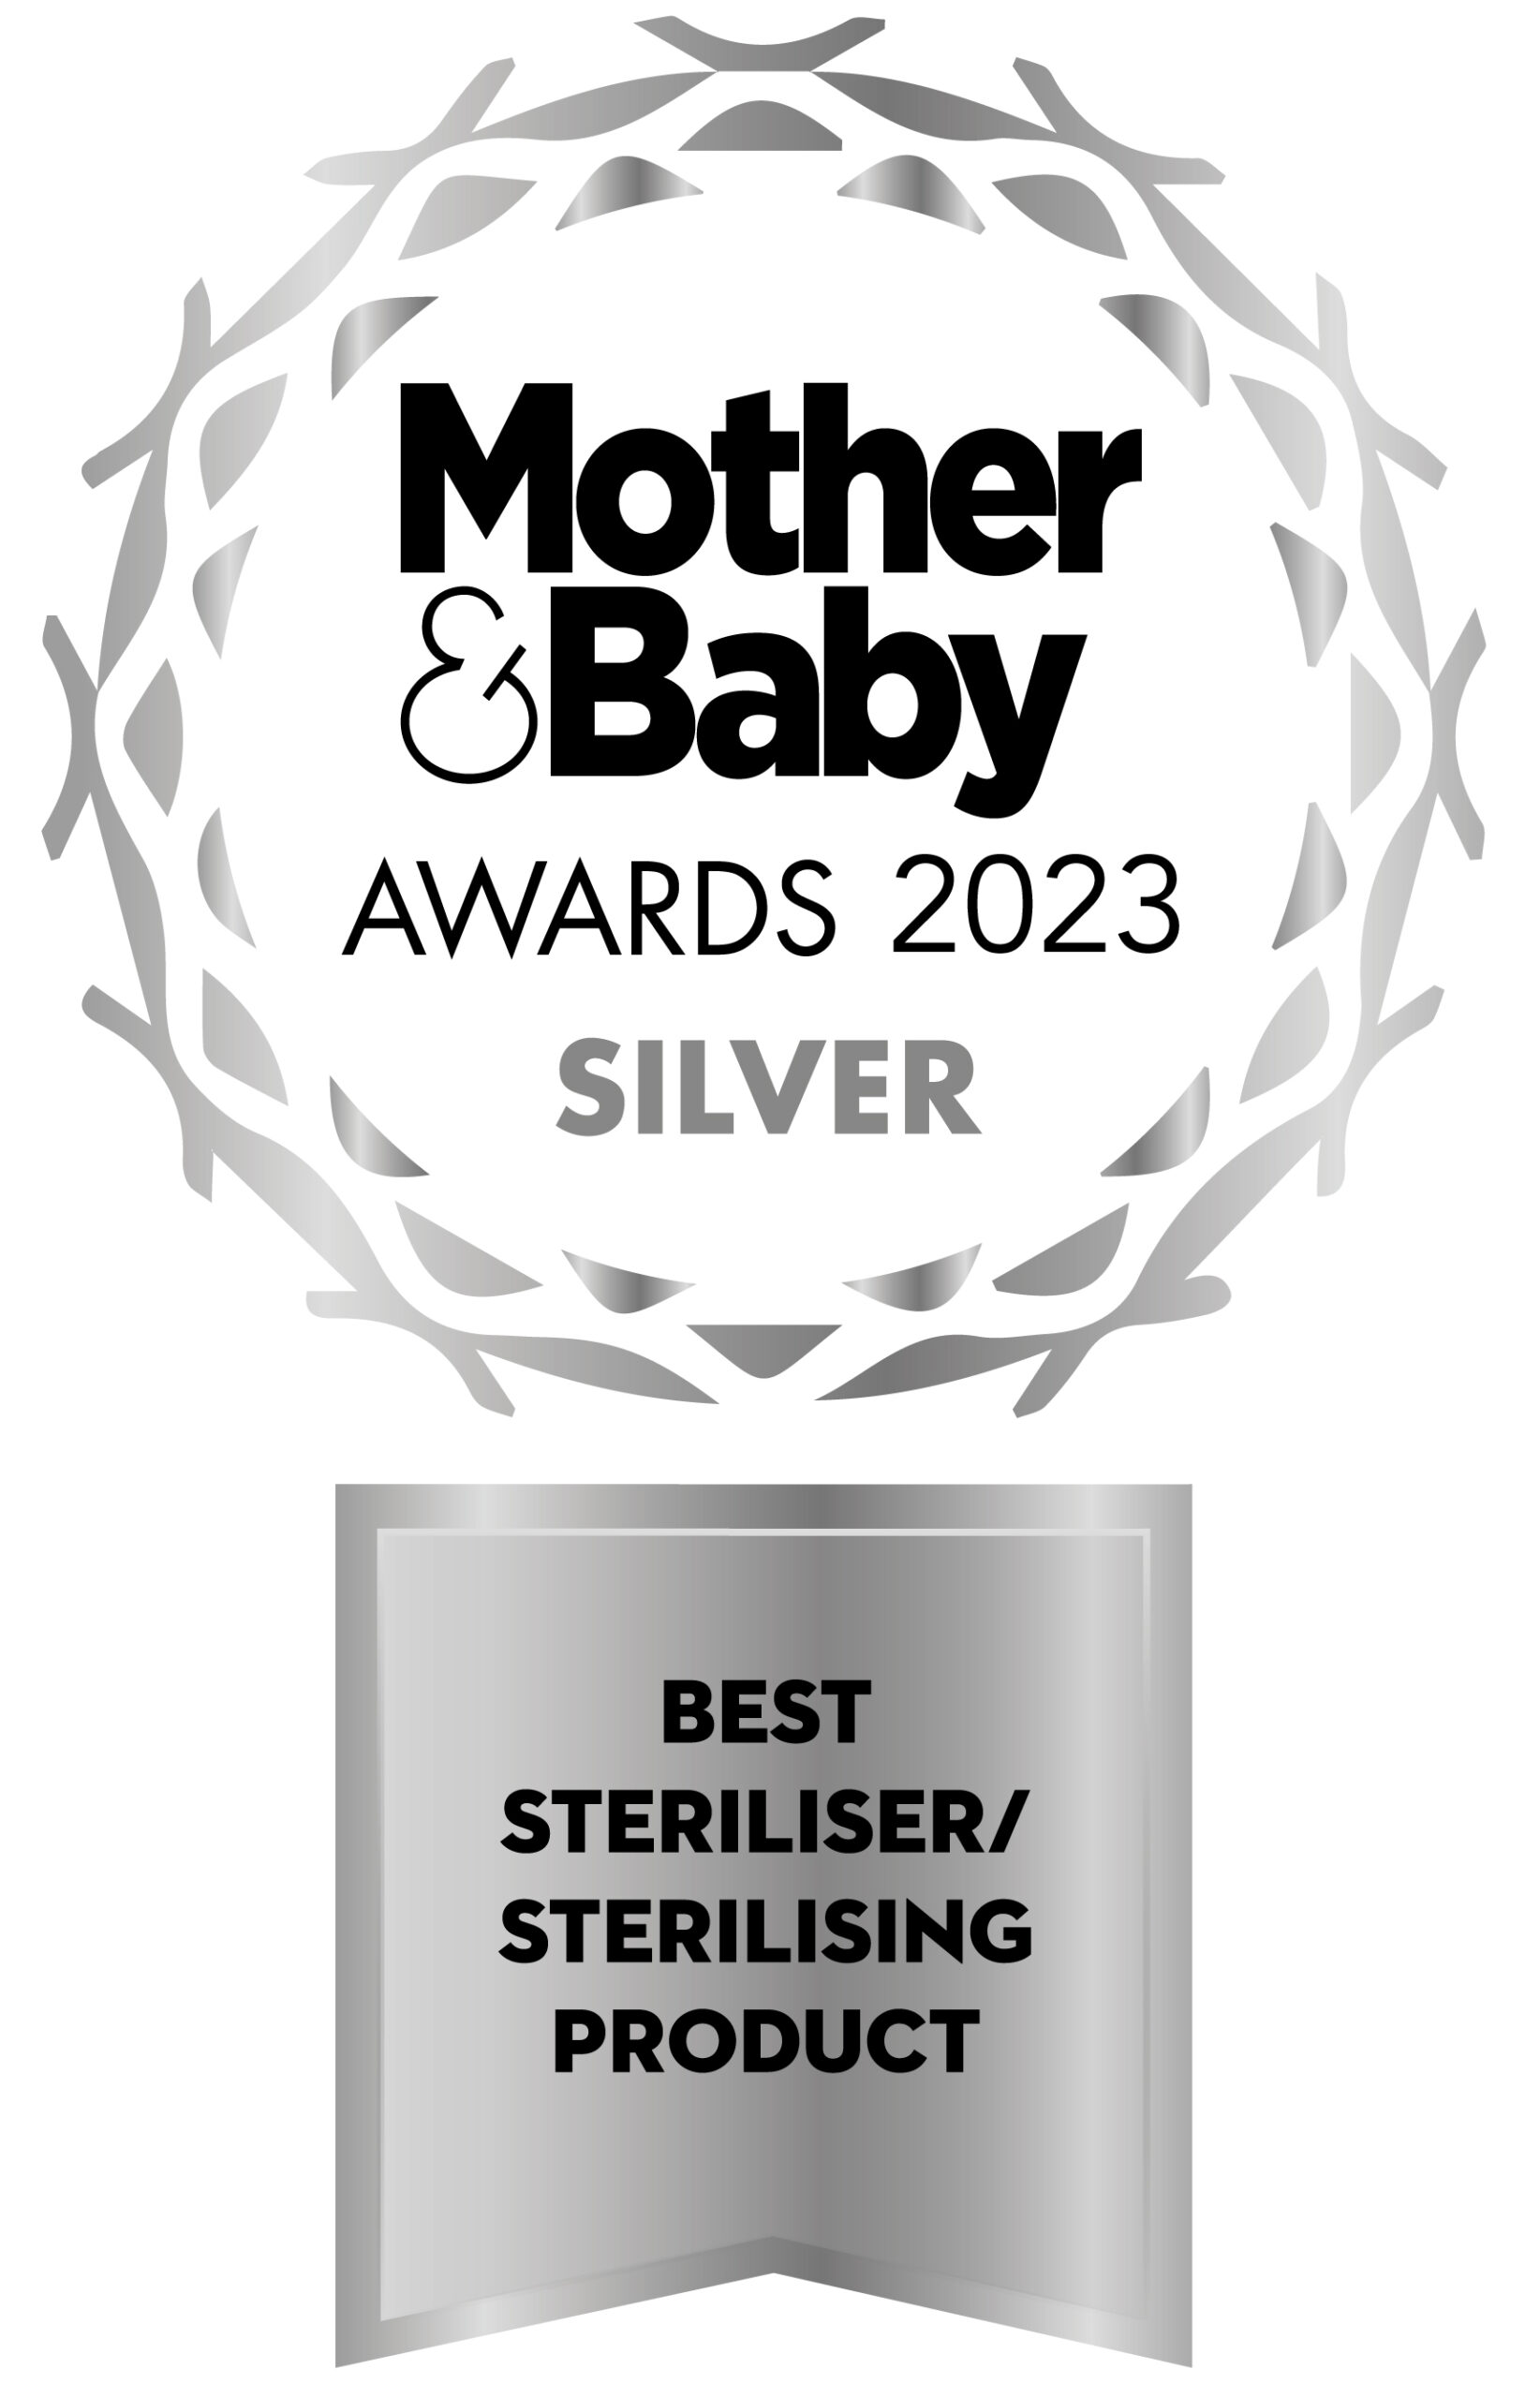 ESAC Bottles & Microwave Steriliser Set Best Steriliser, Sterilising Product - Silver